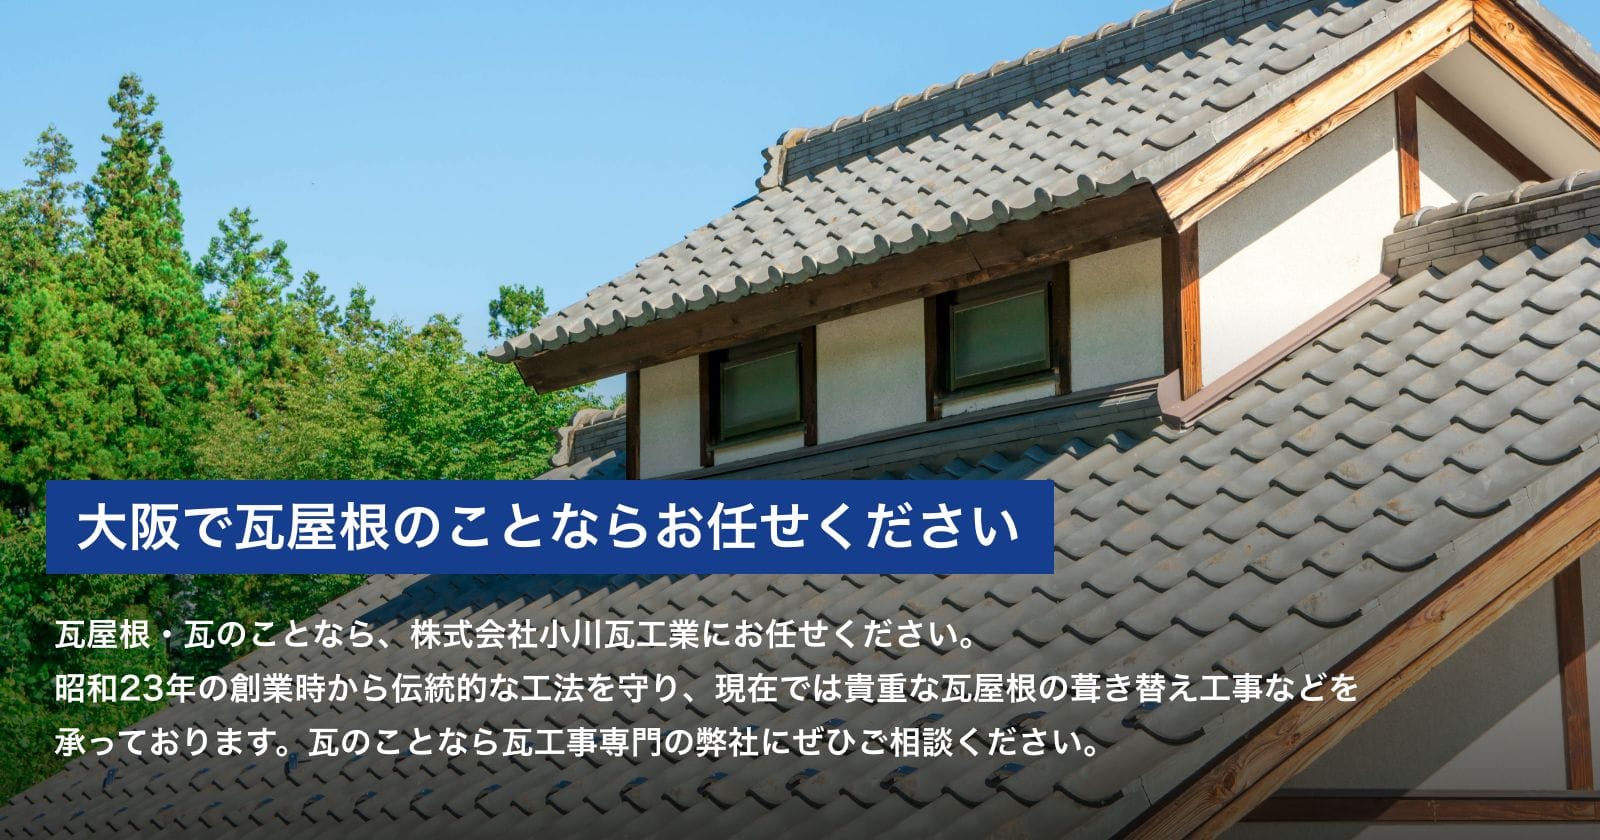 大阪で瓦屋根のことならお任せください。